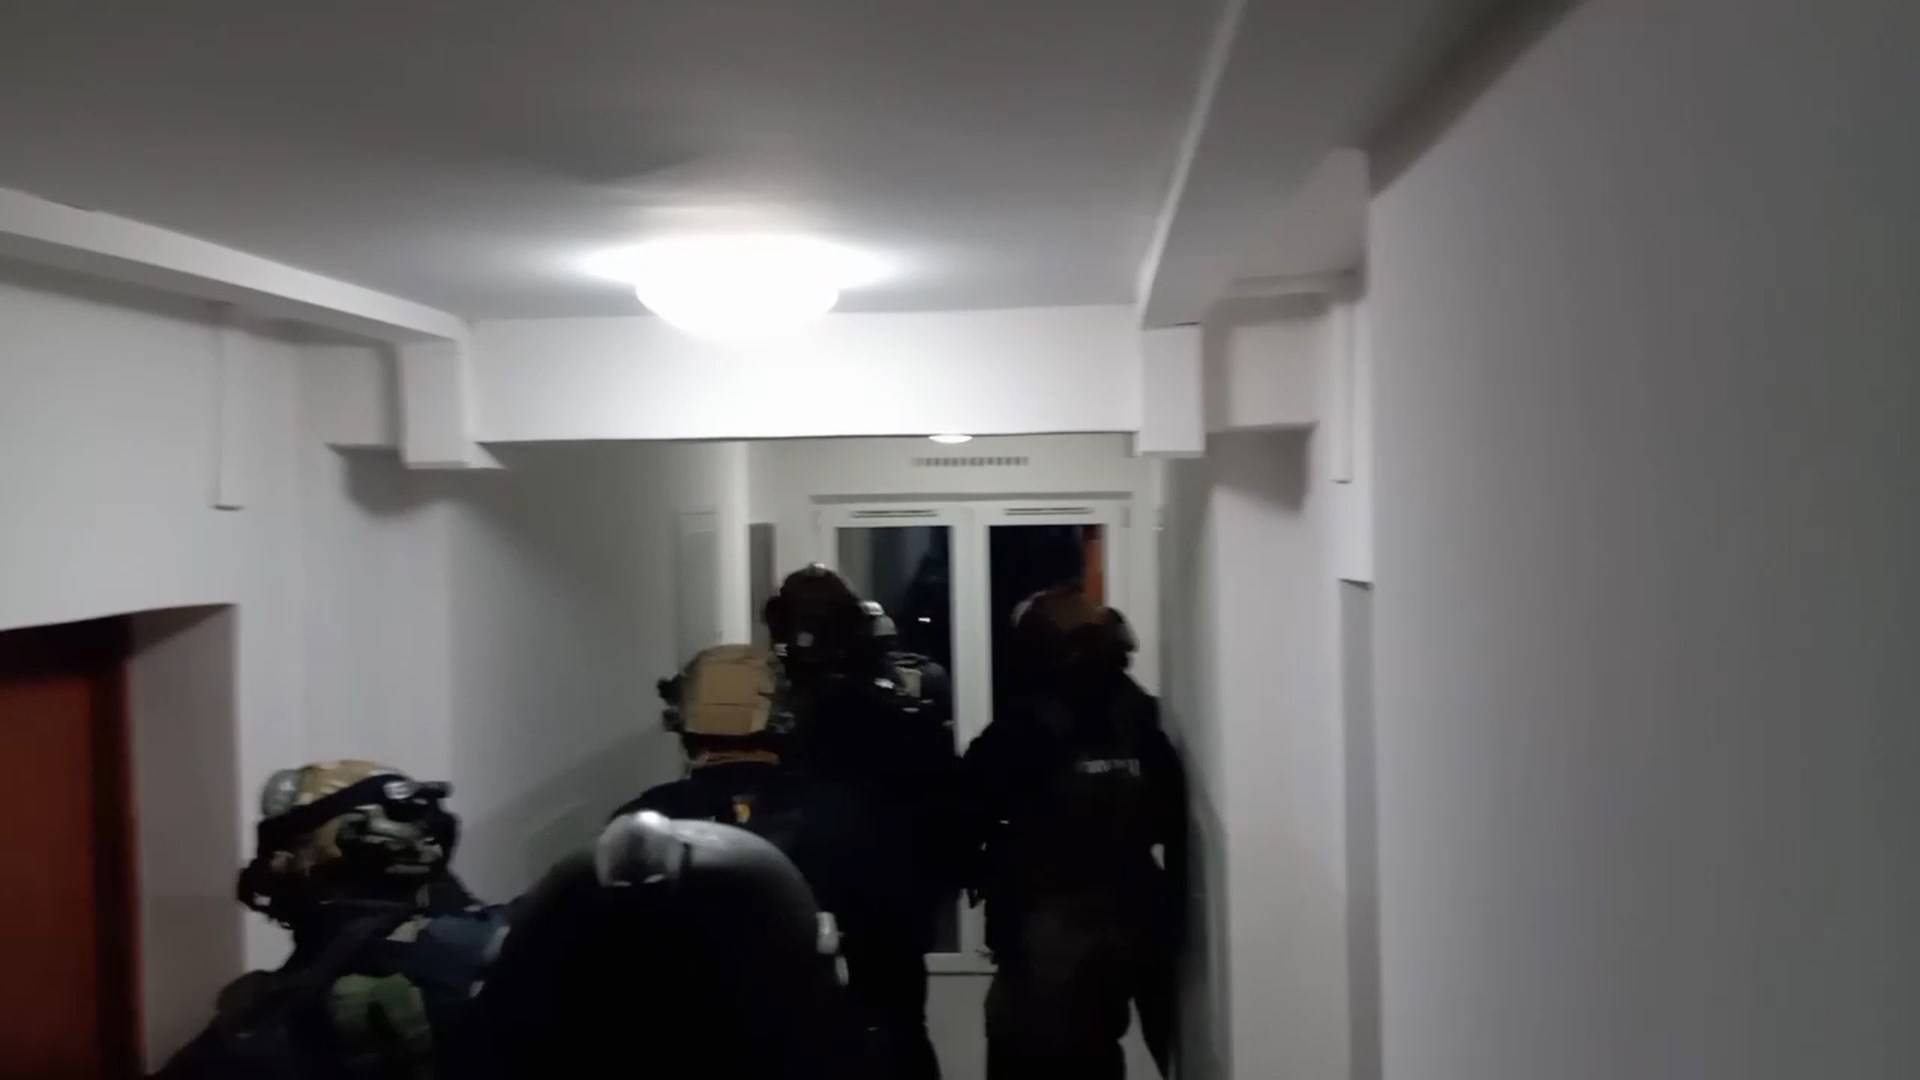 Policja rozbiła narkotykowy gang, padły strzały przy wyważaniu drzwi (film)